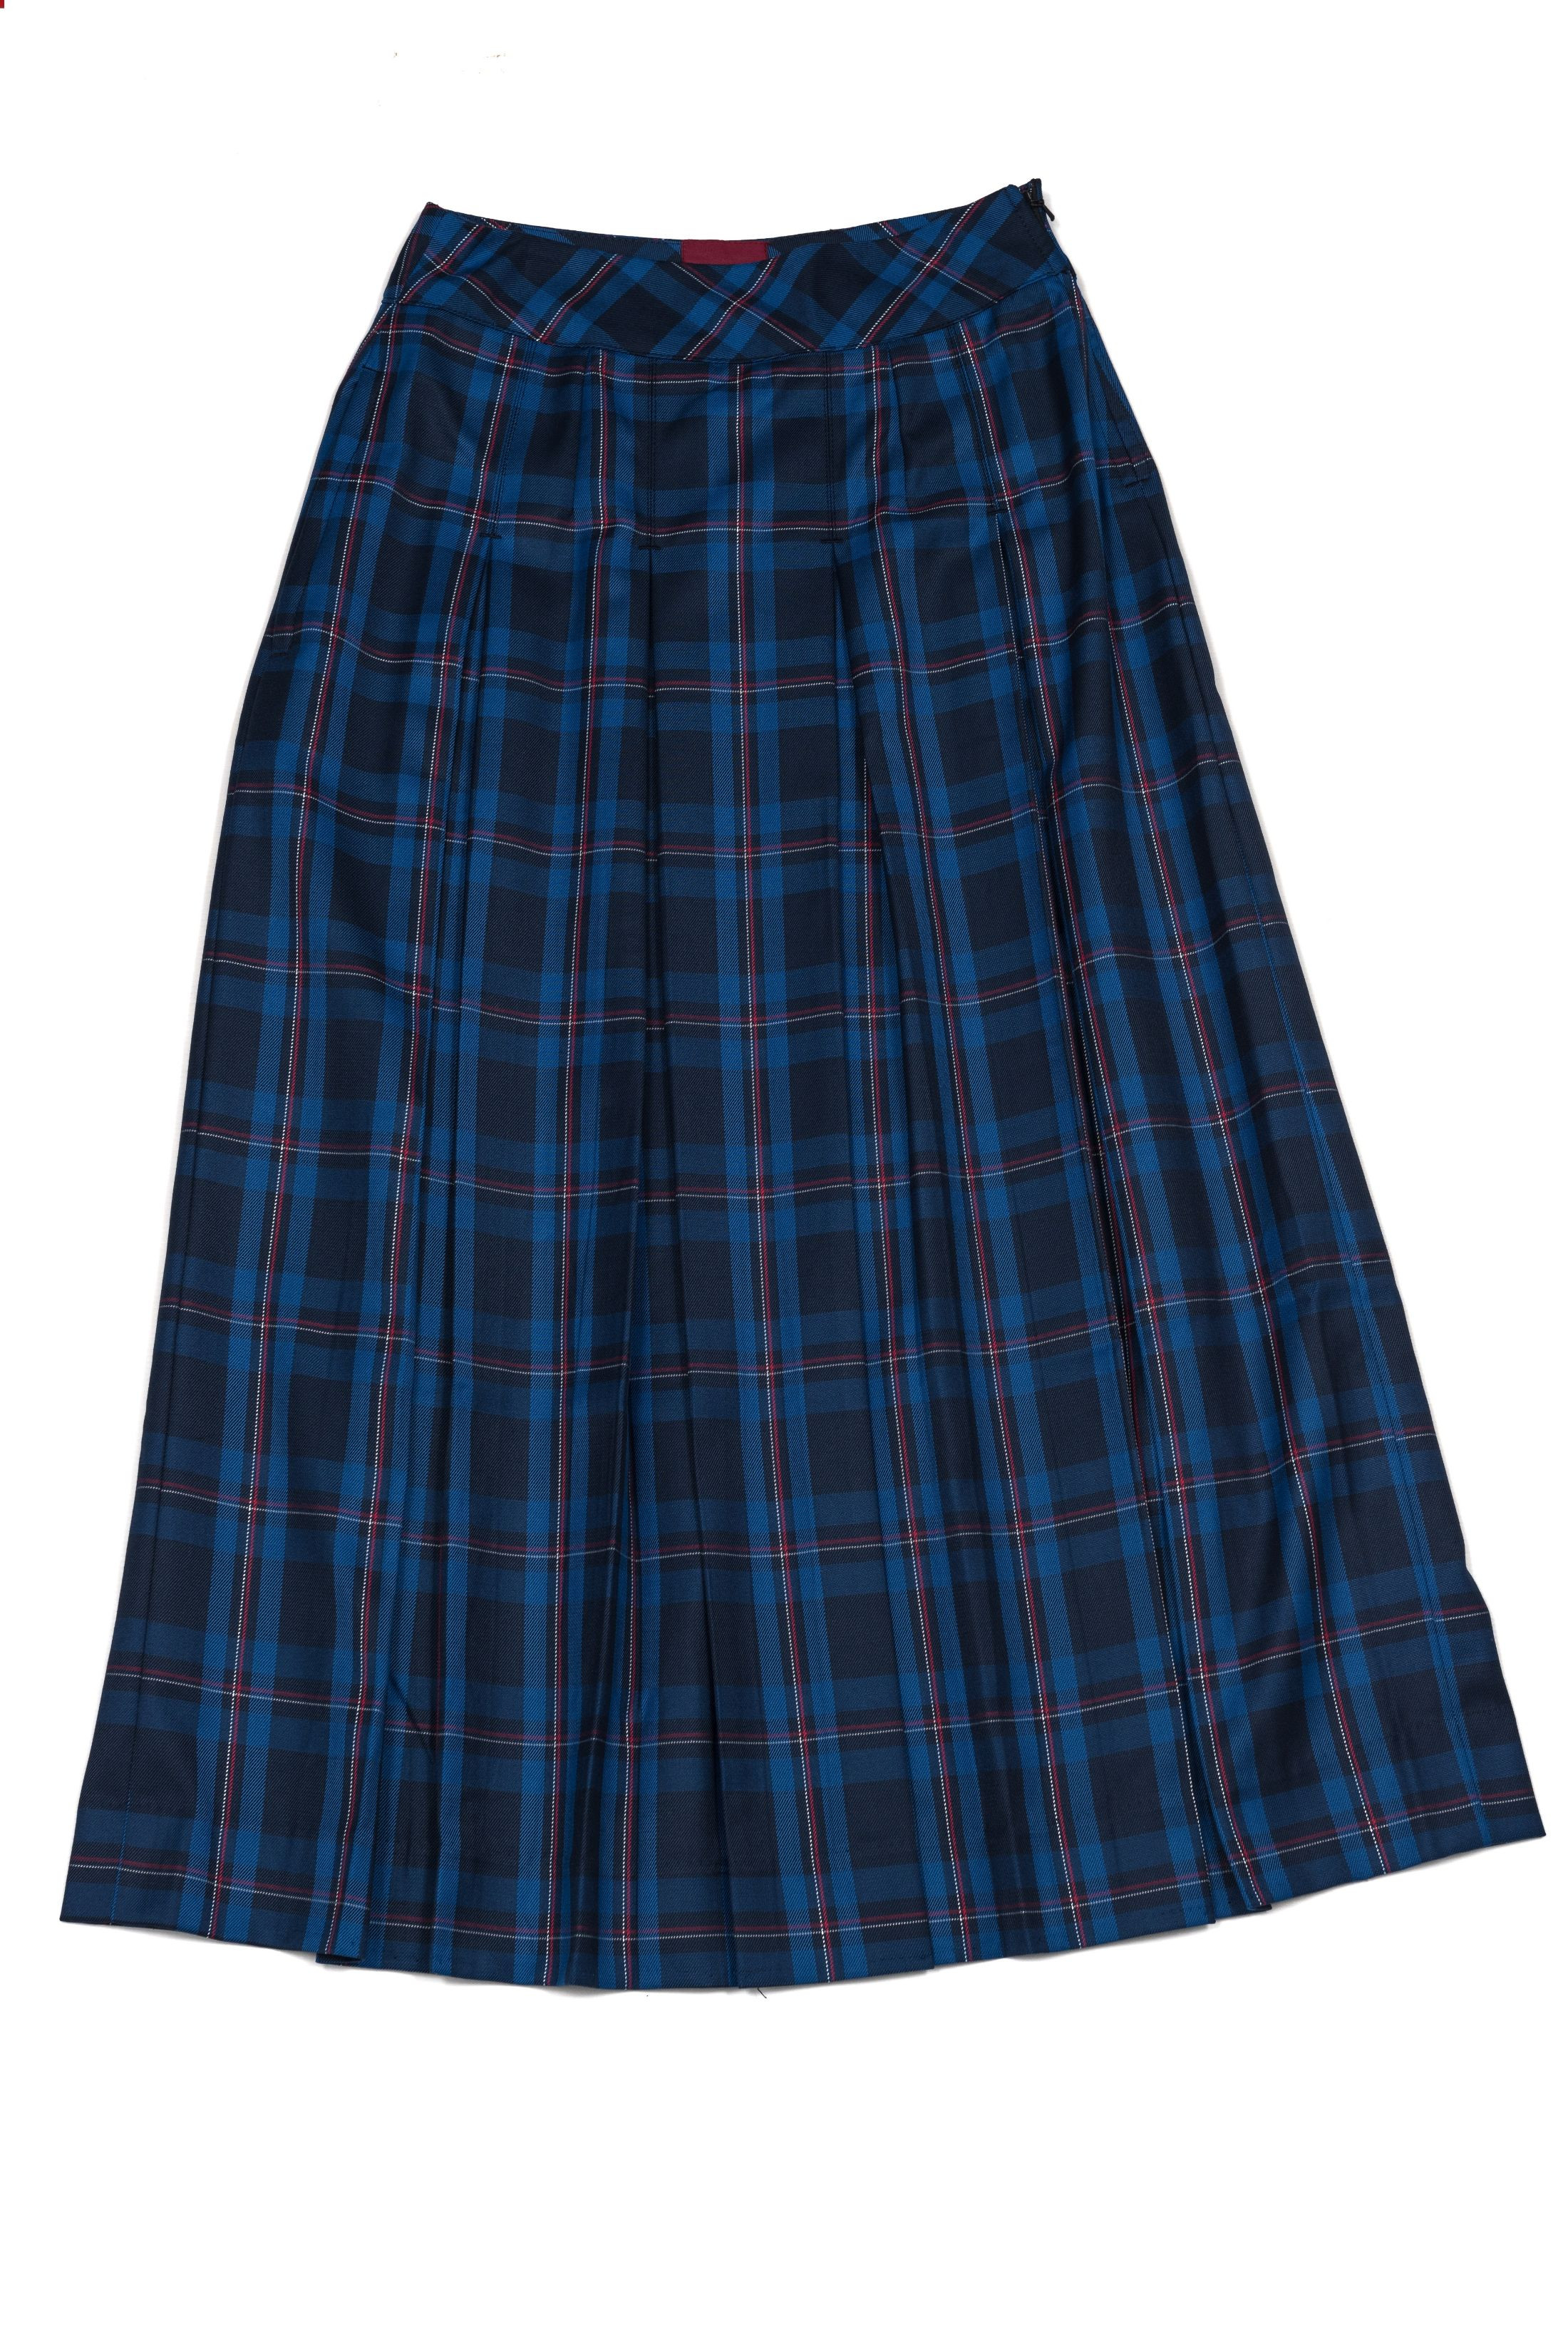 Senior Girls Winter Skirt 